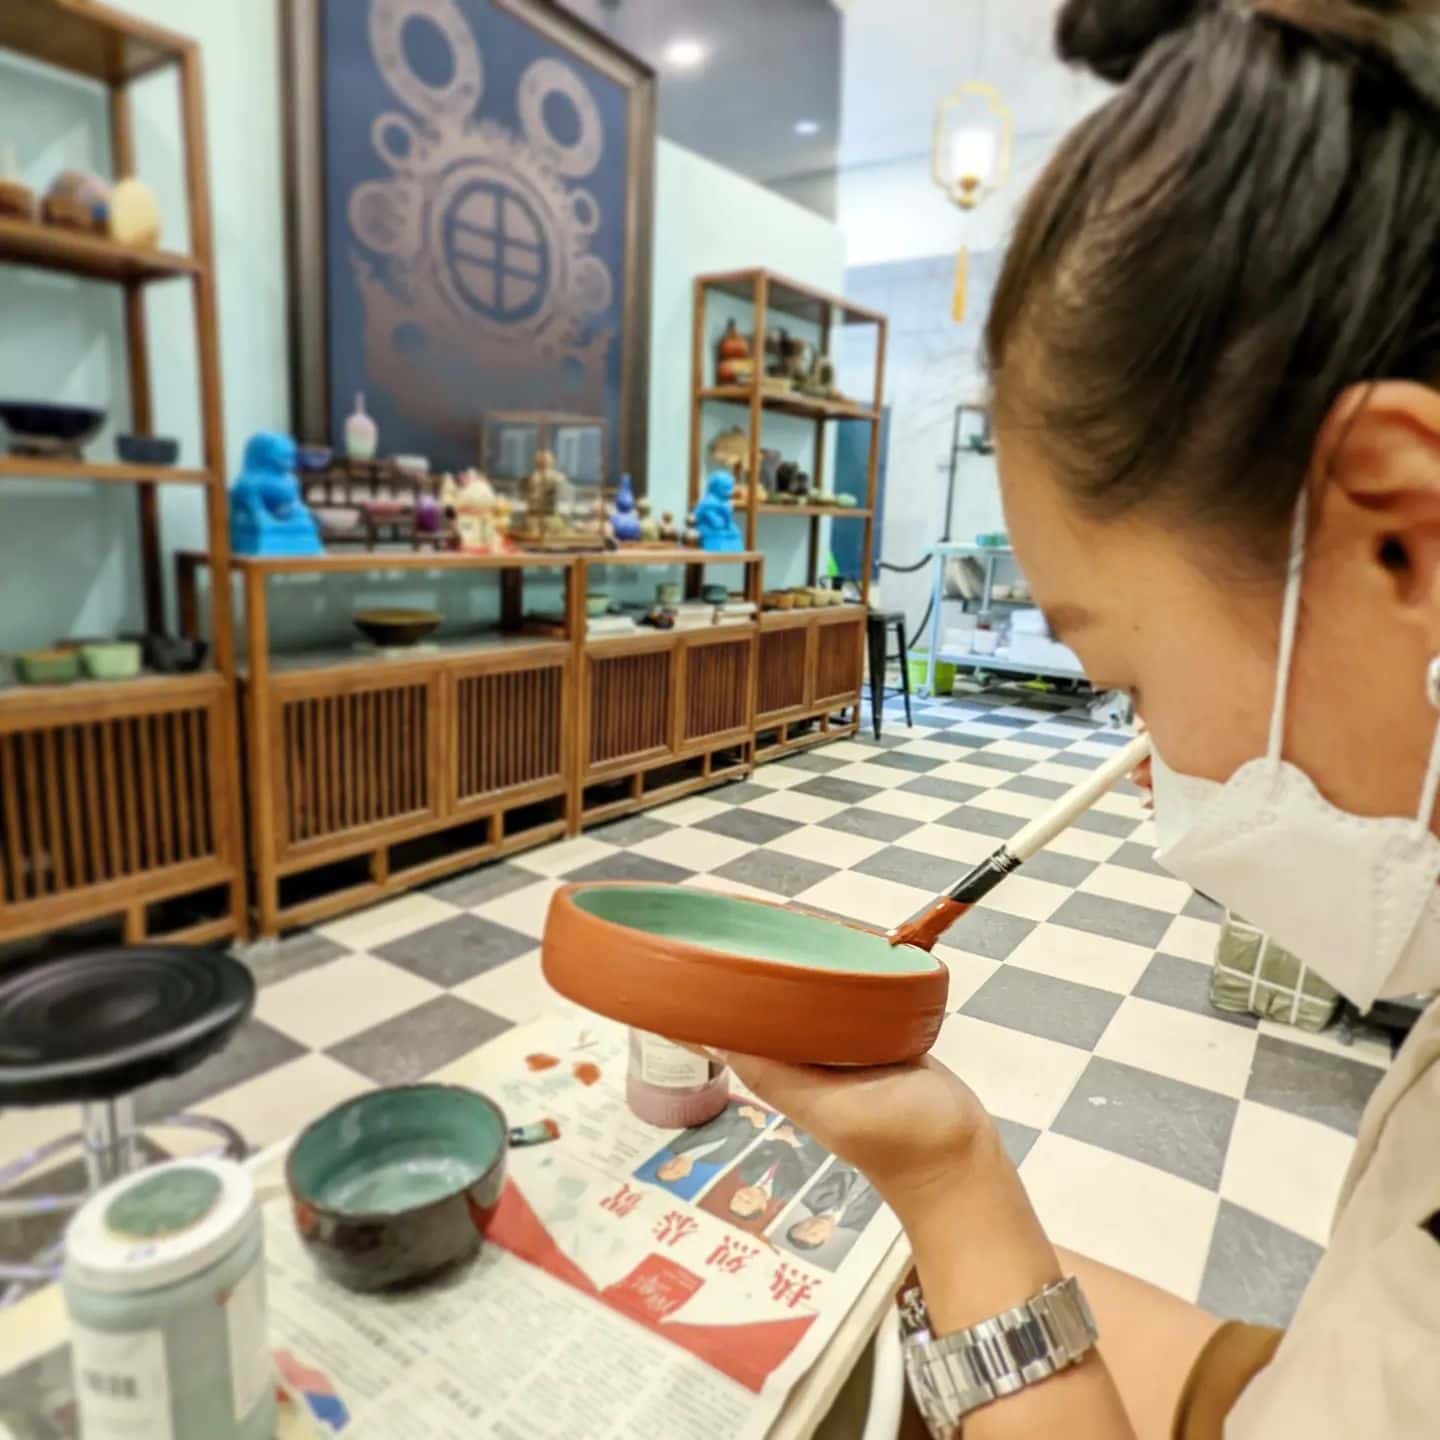 wei chuan pottery studio